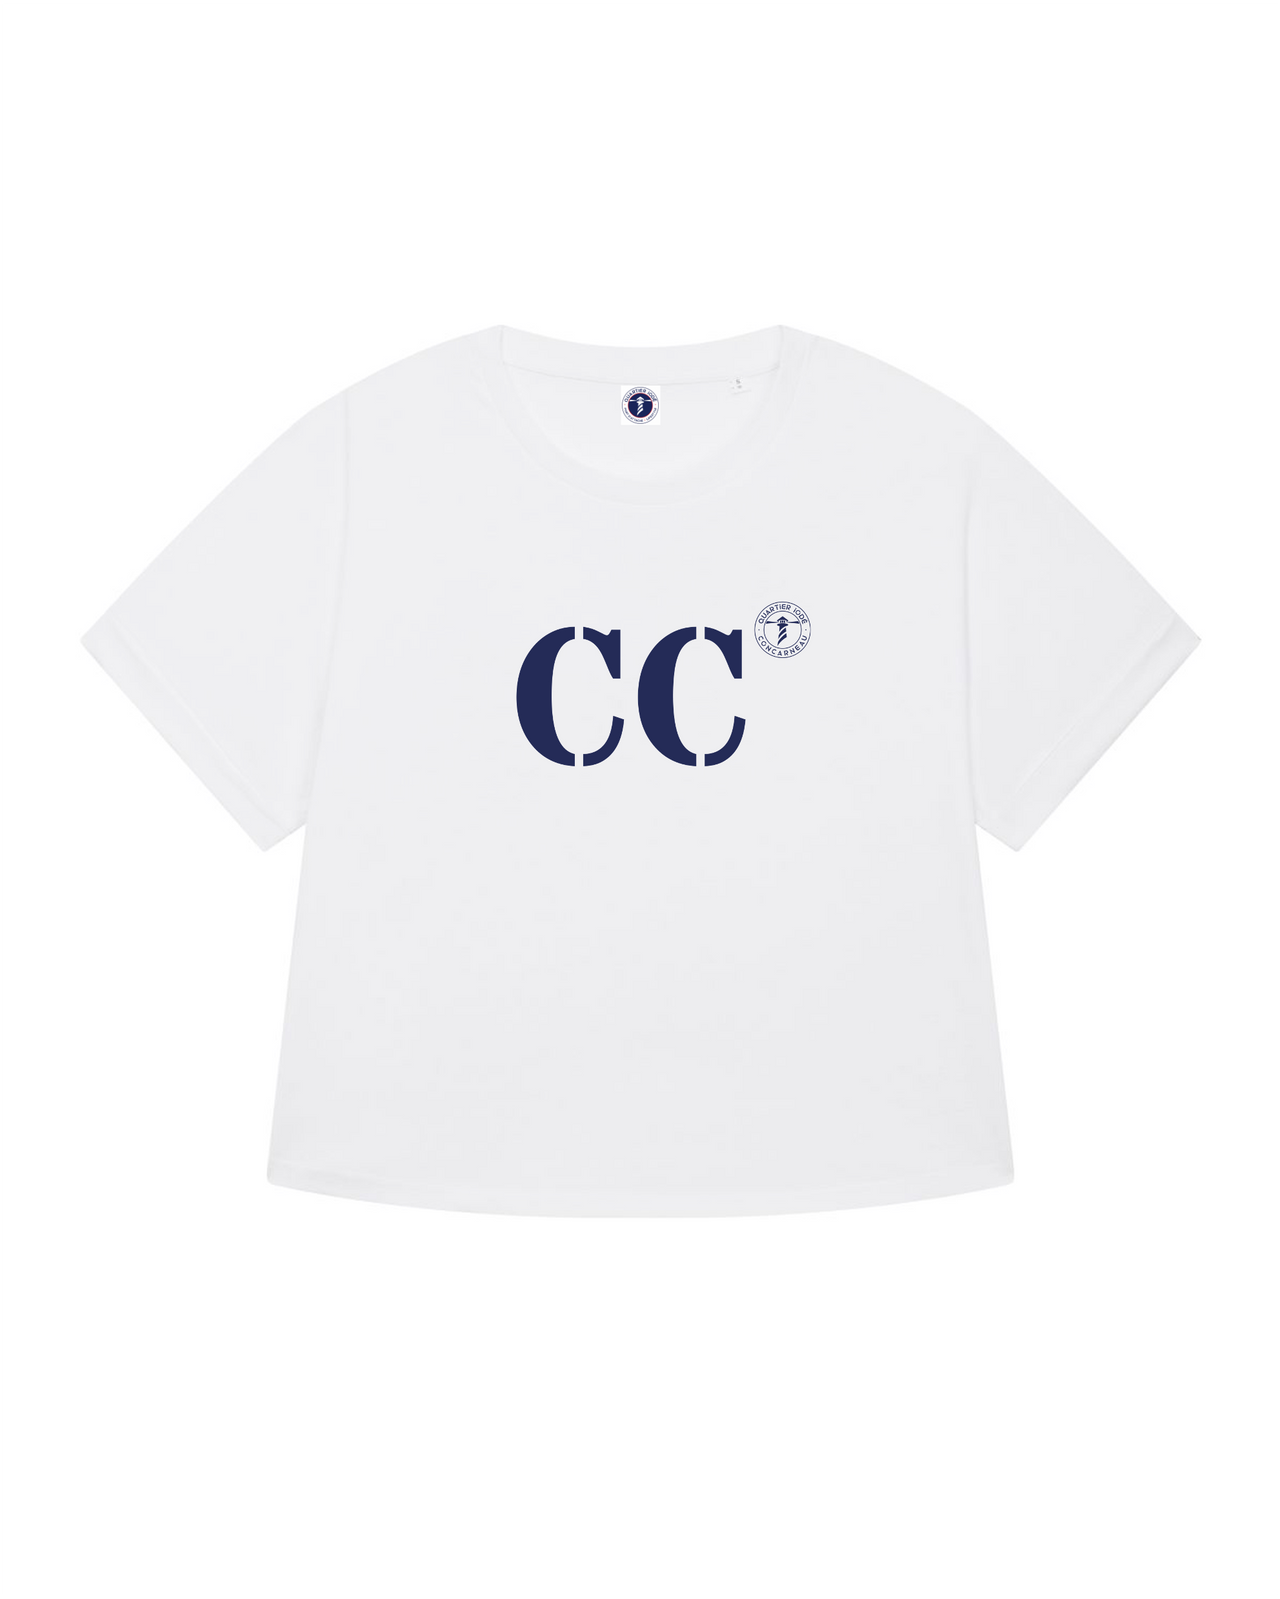 Le T shirt oversized CC pour Concarneau de la marque Quartier iodé, pour porter son port d'attache avec style et décontraction